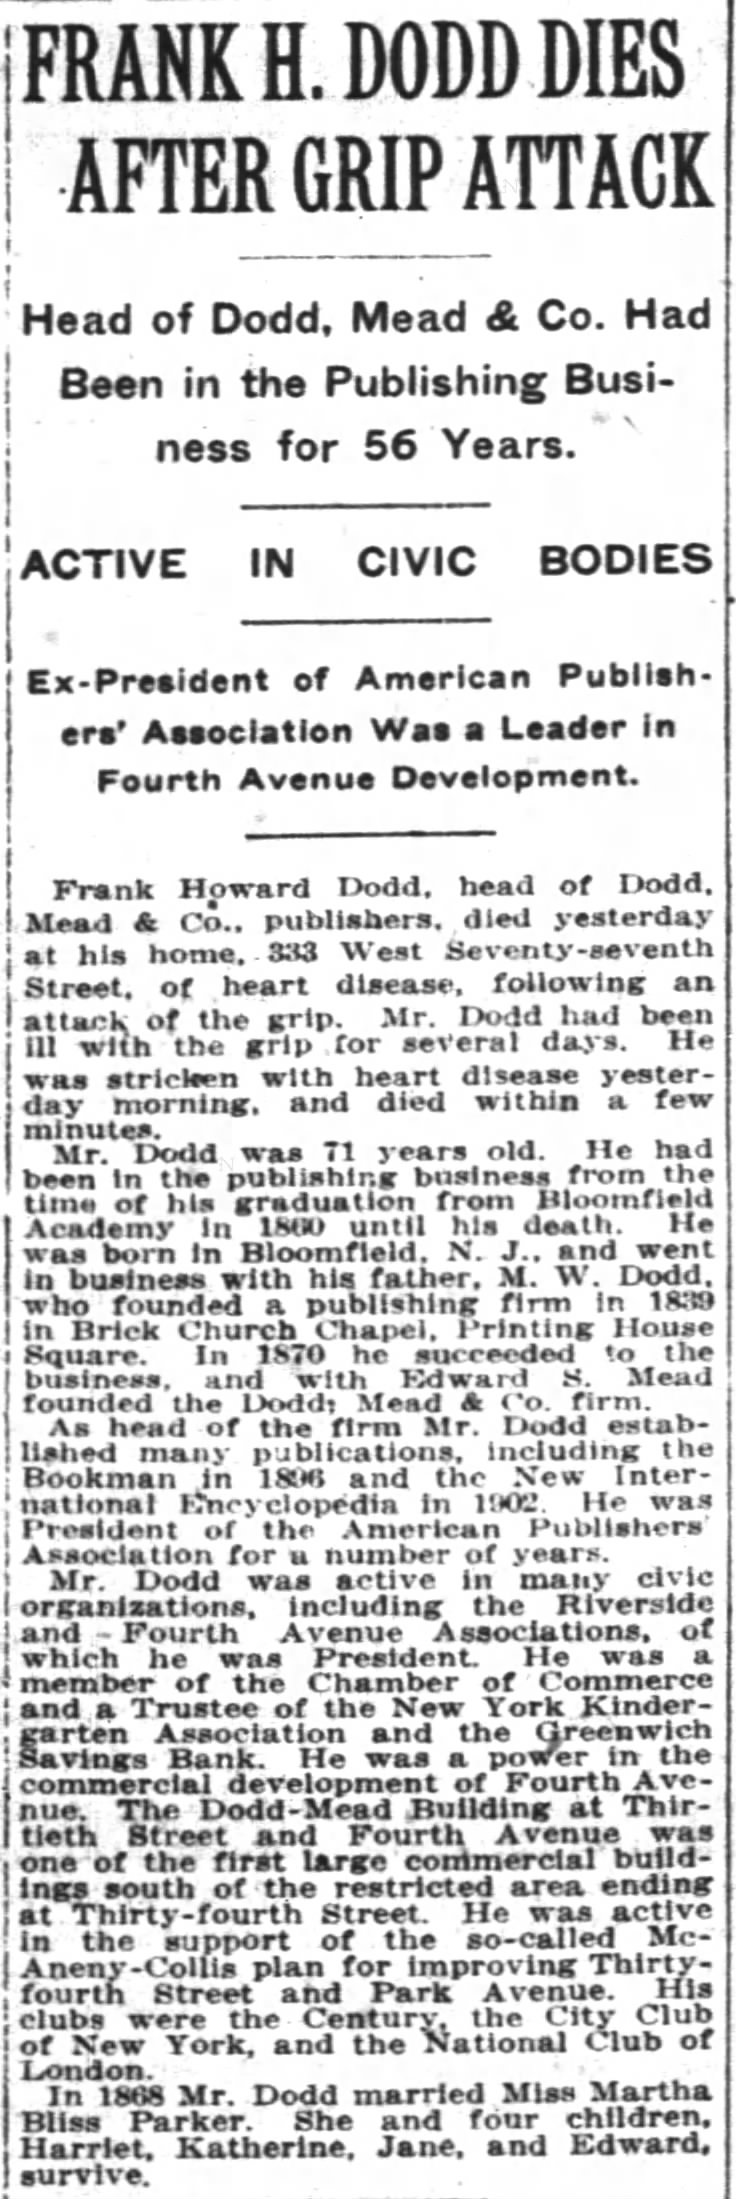 Frank H. Dodd Dies After Grip Attack